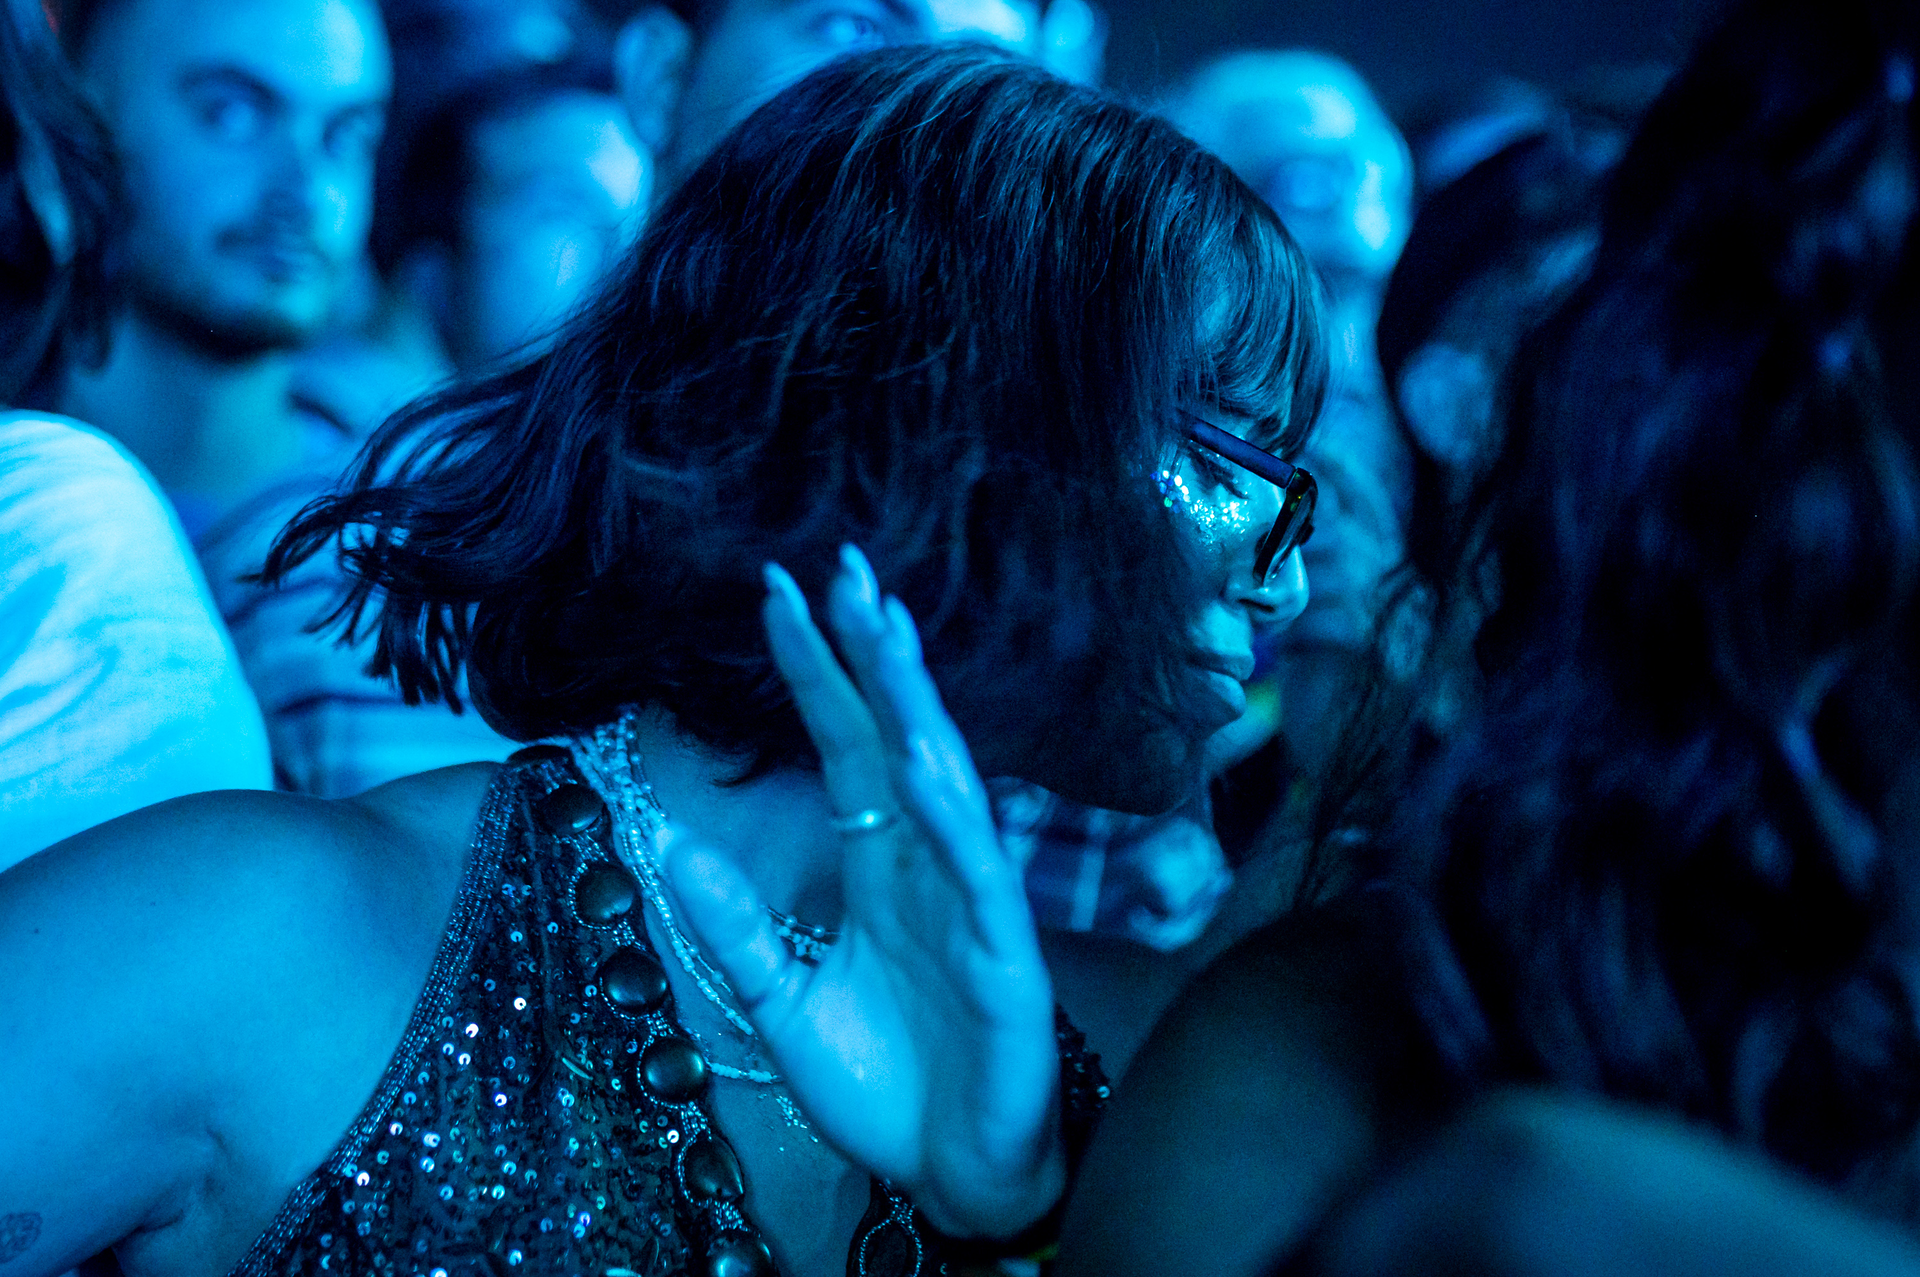 Woman dancing in nightclub